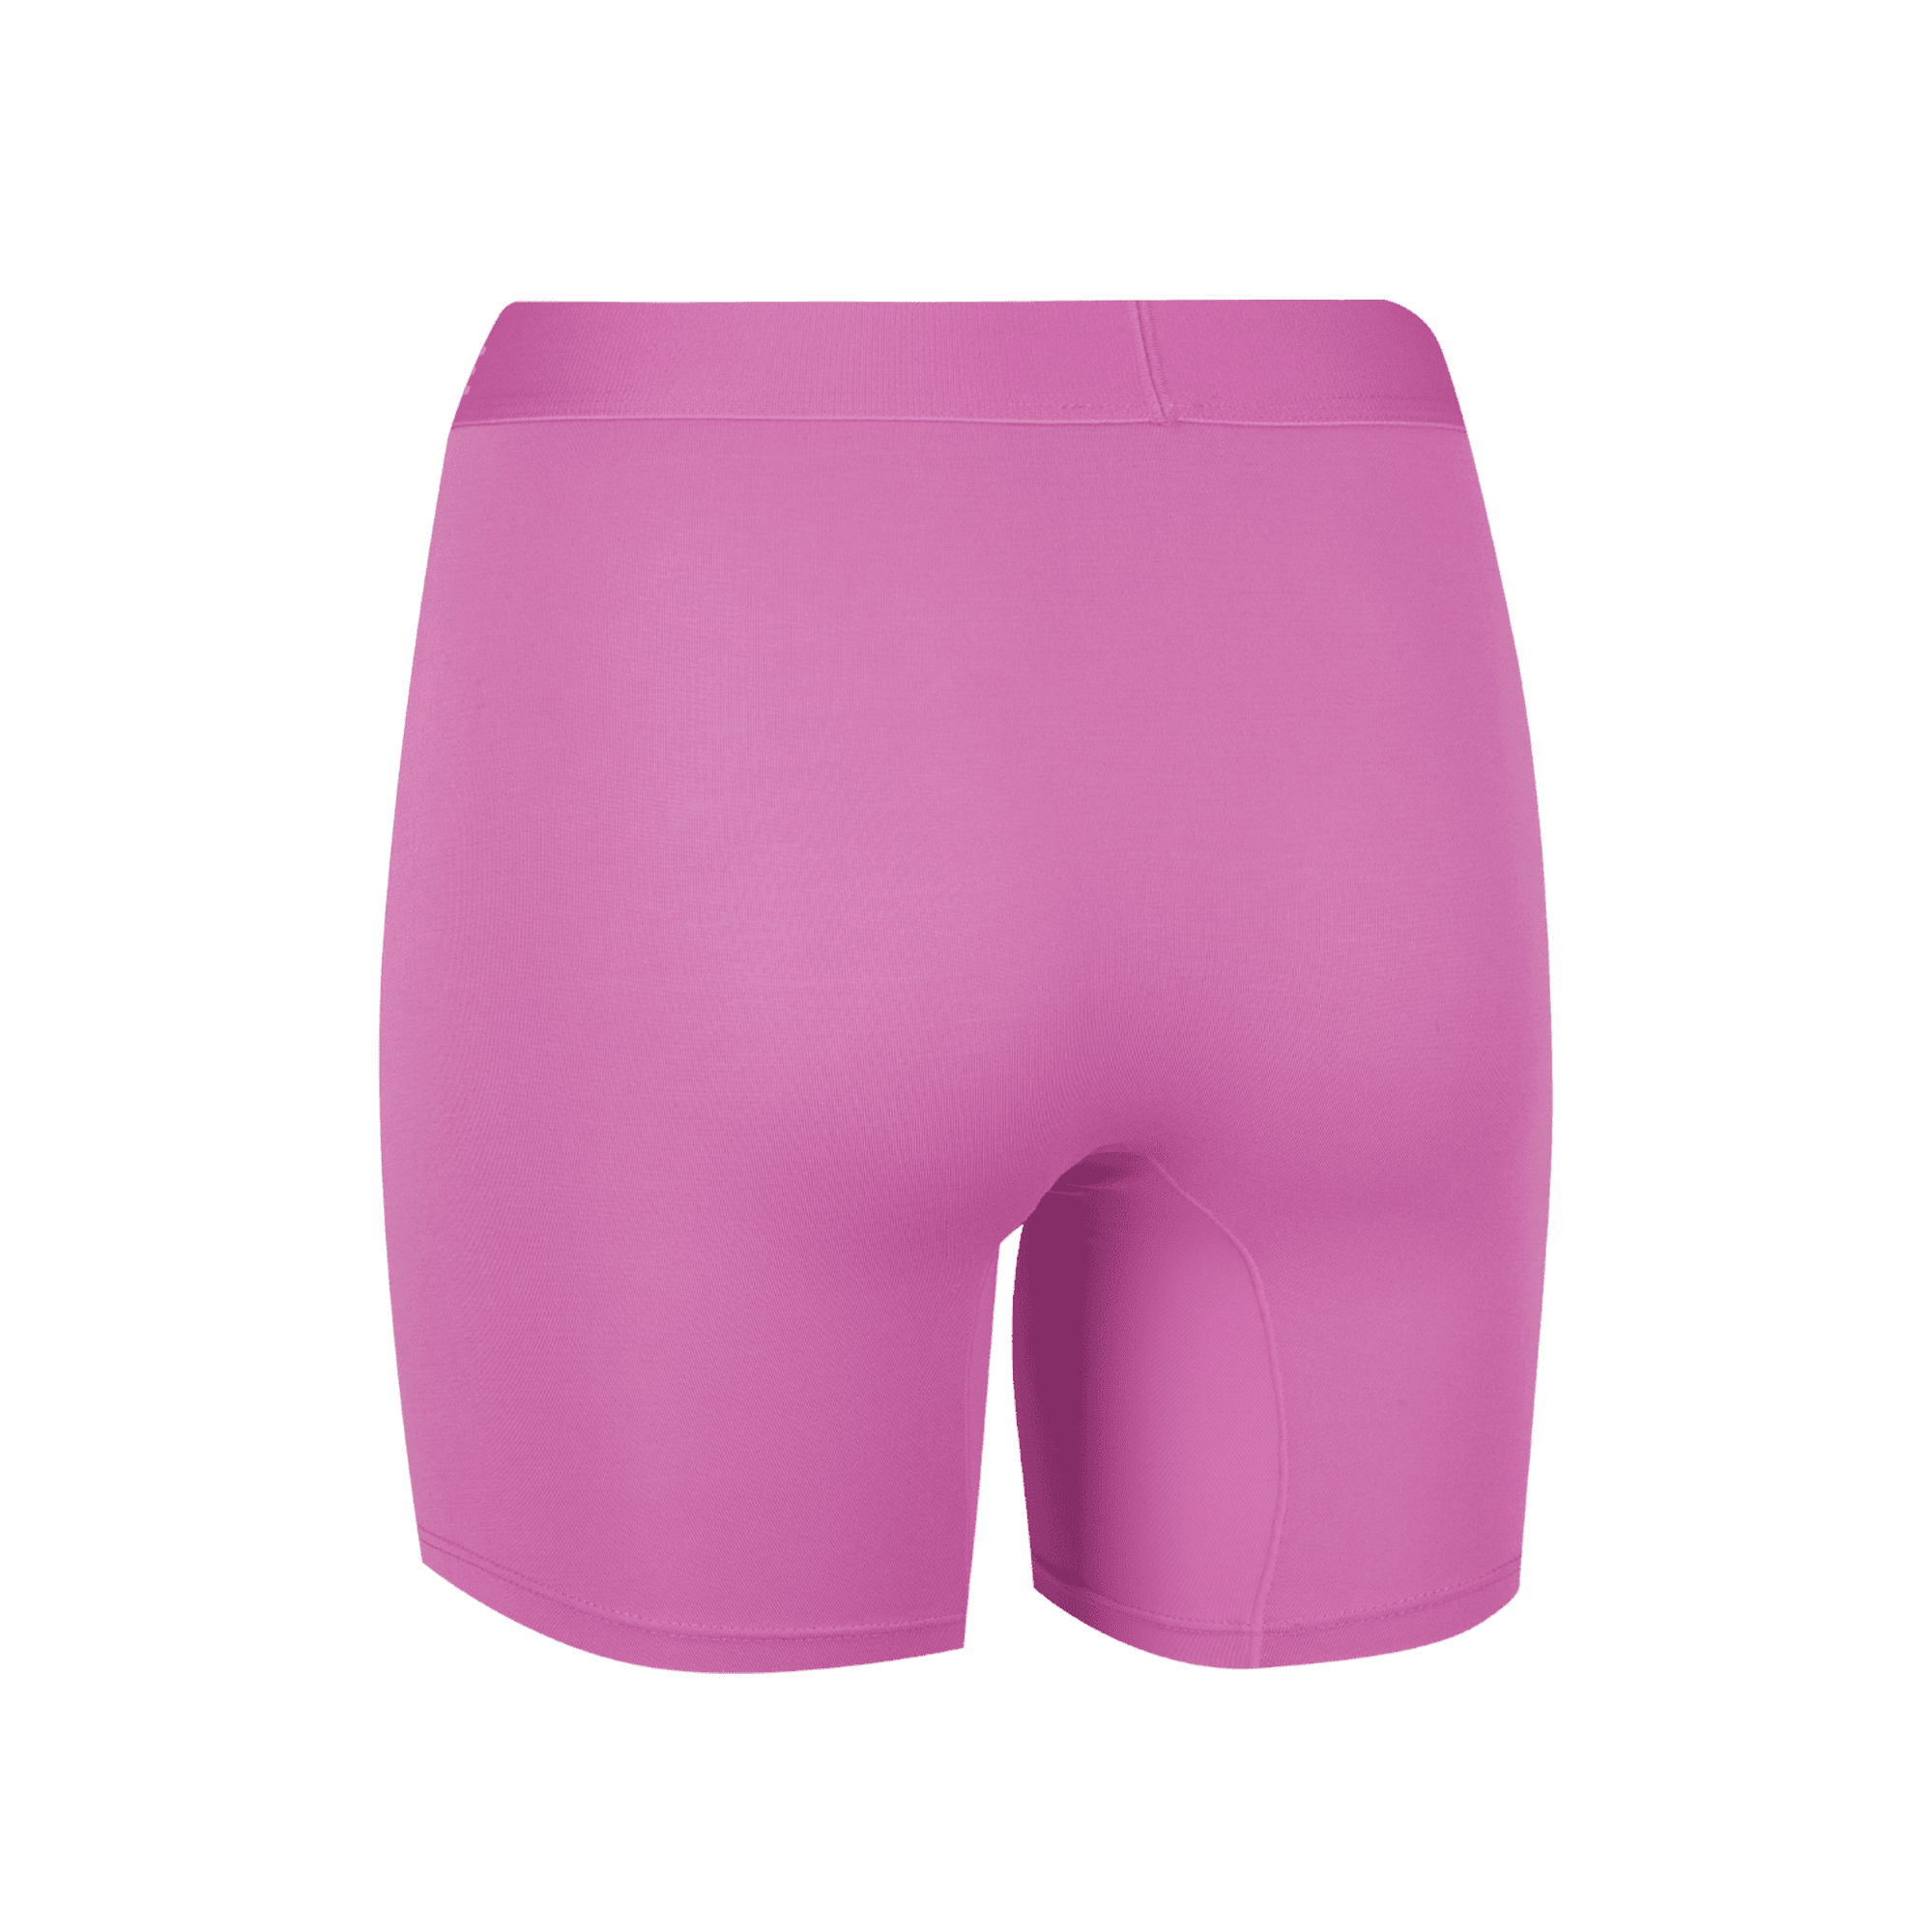 Women's Body Shorts - Prawn Cracker